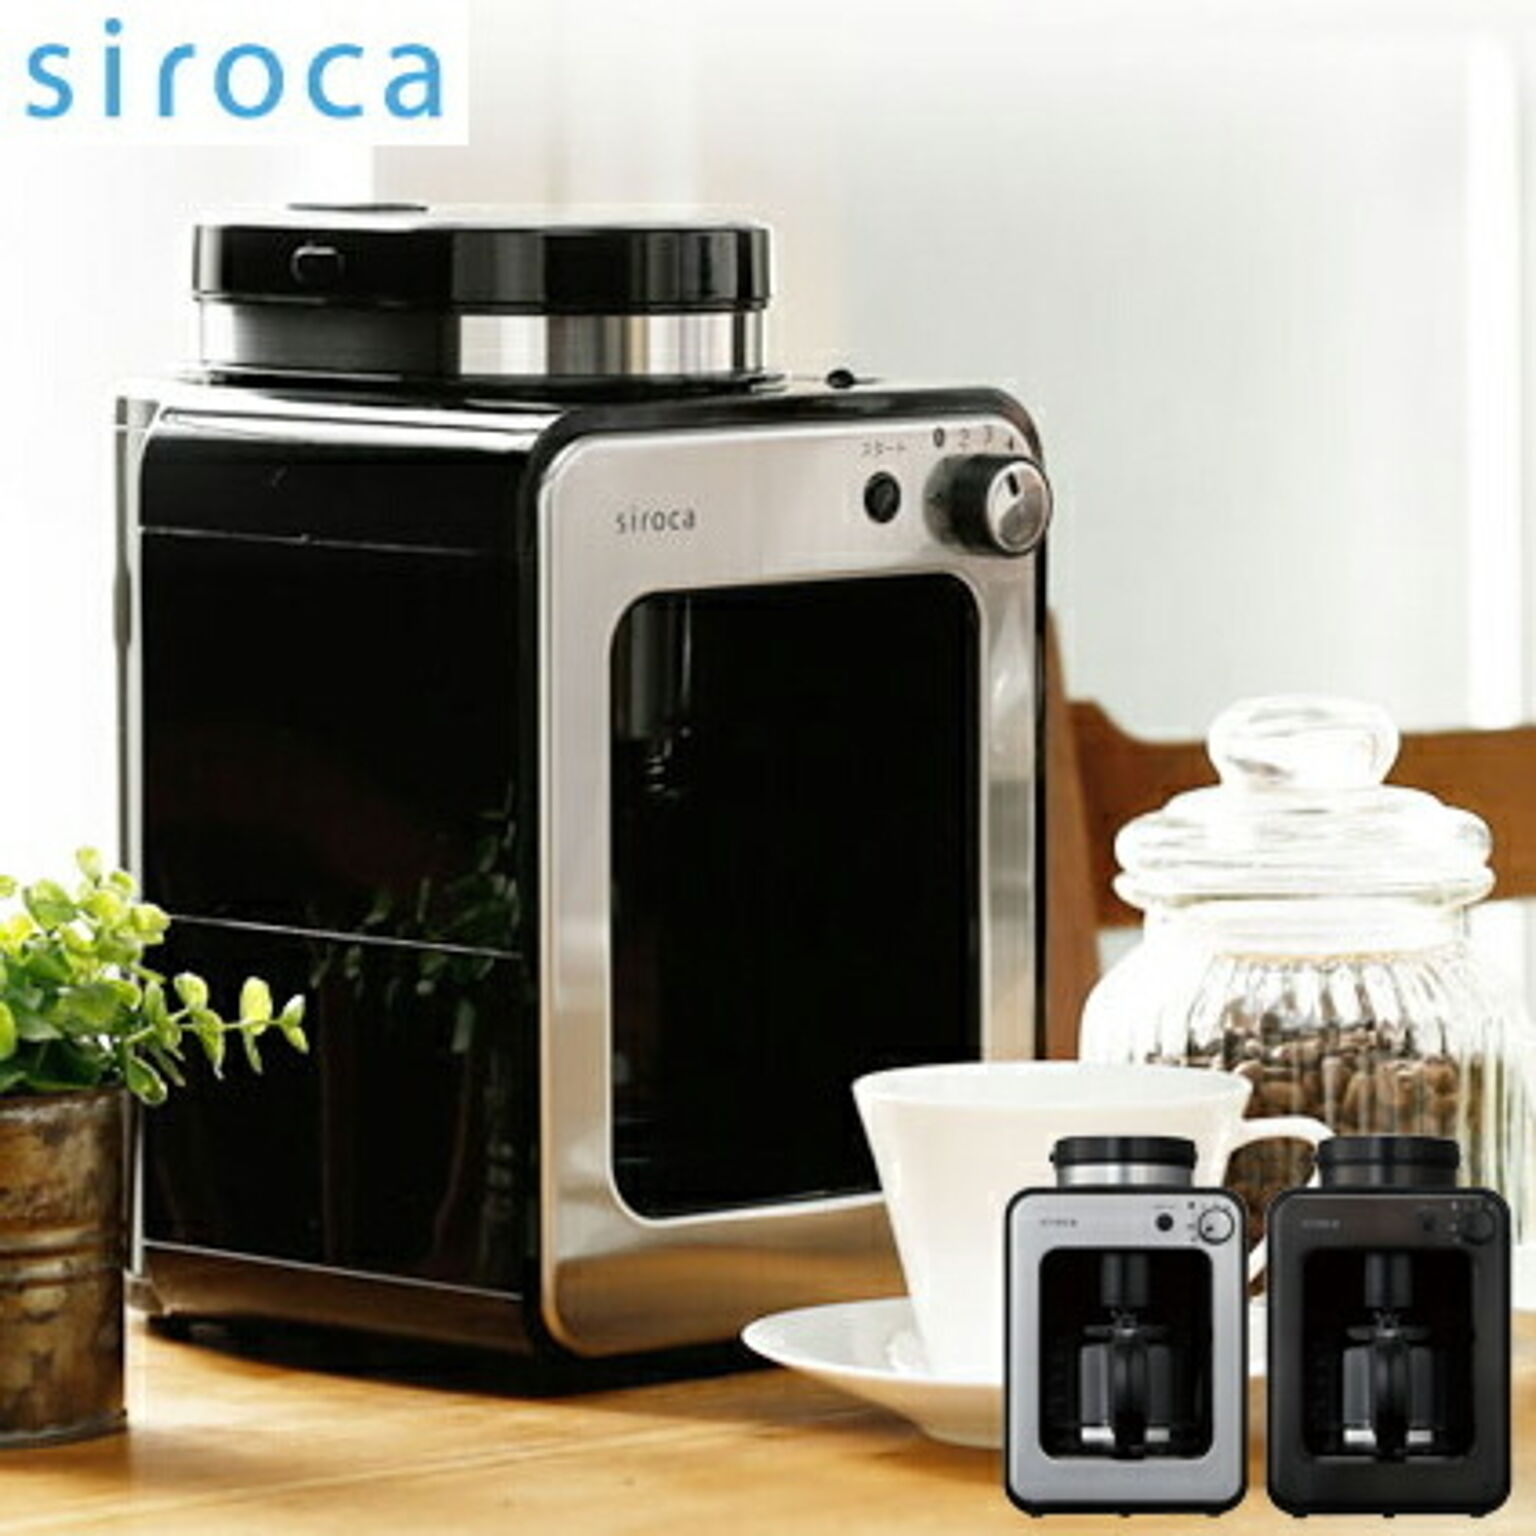 siroca シロカ crossline 全自動コーヒーメーカー SC-A221SS シルバー ステンレスメッシュフィルター コーヒー豆 粉 保温機能付き